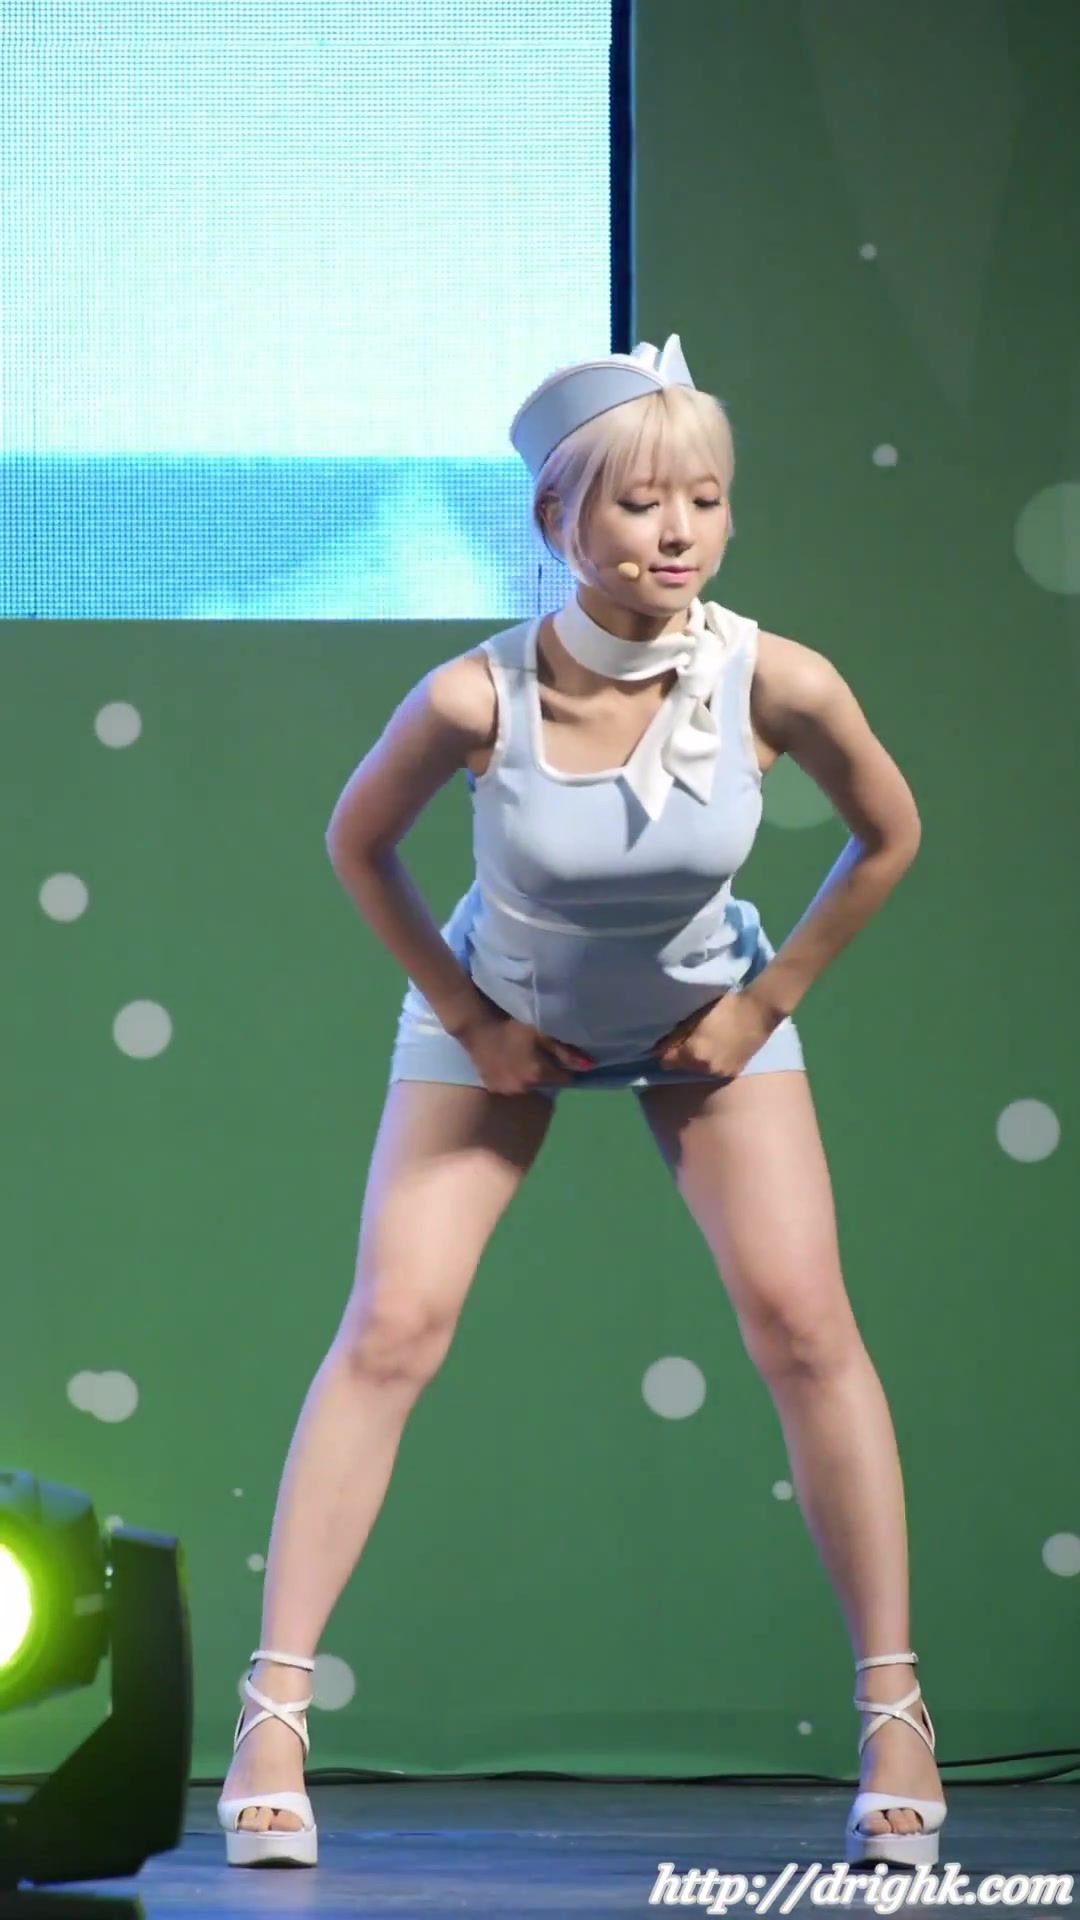 韓国アイドルグループAOAのライブがびしょ濡れパンツが丸見えで過激すぎと話題に022